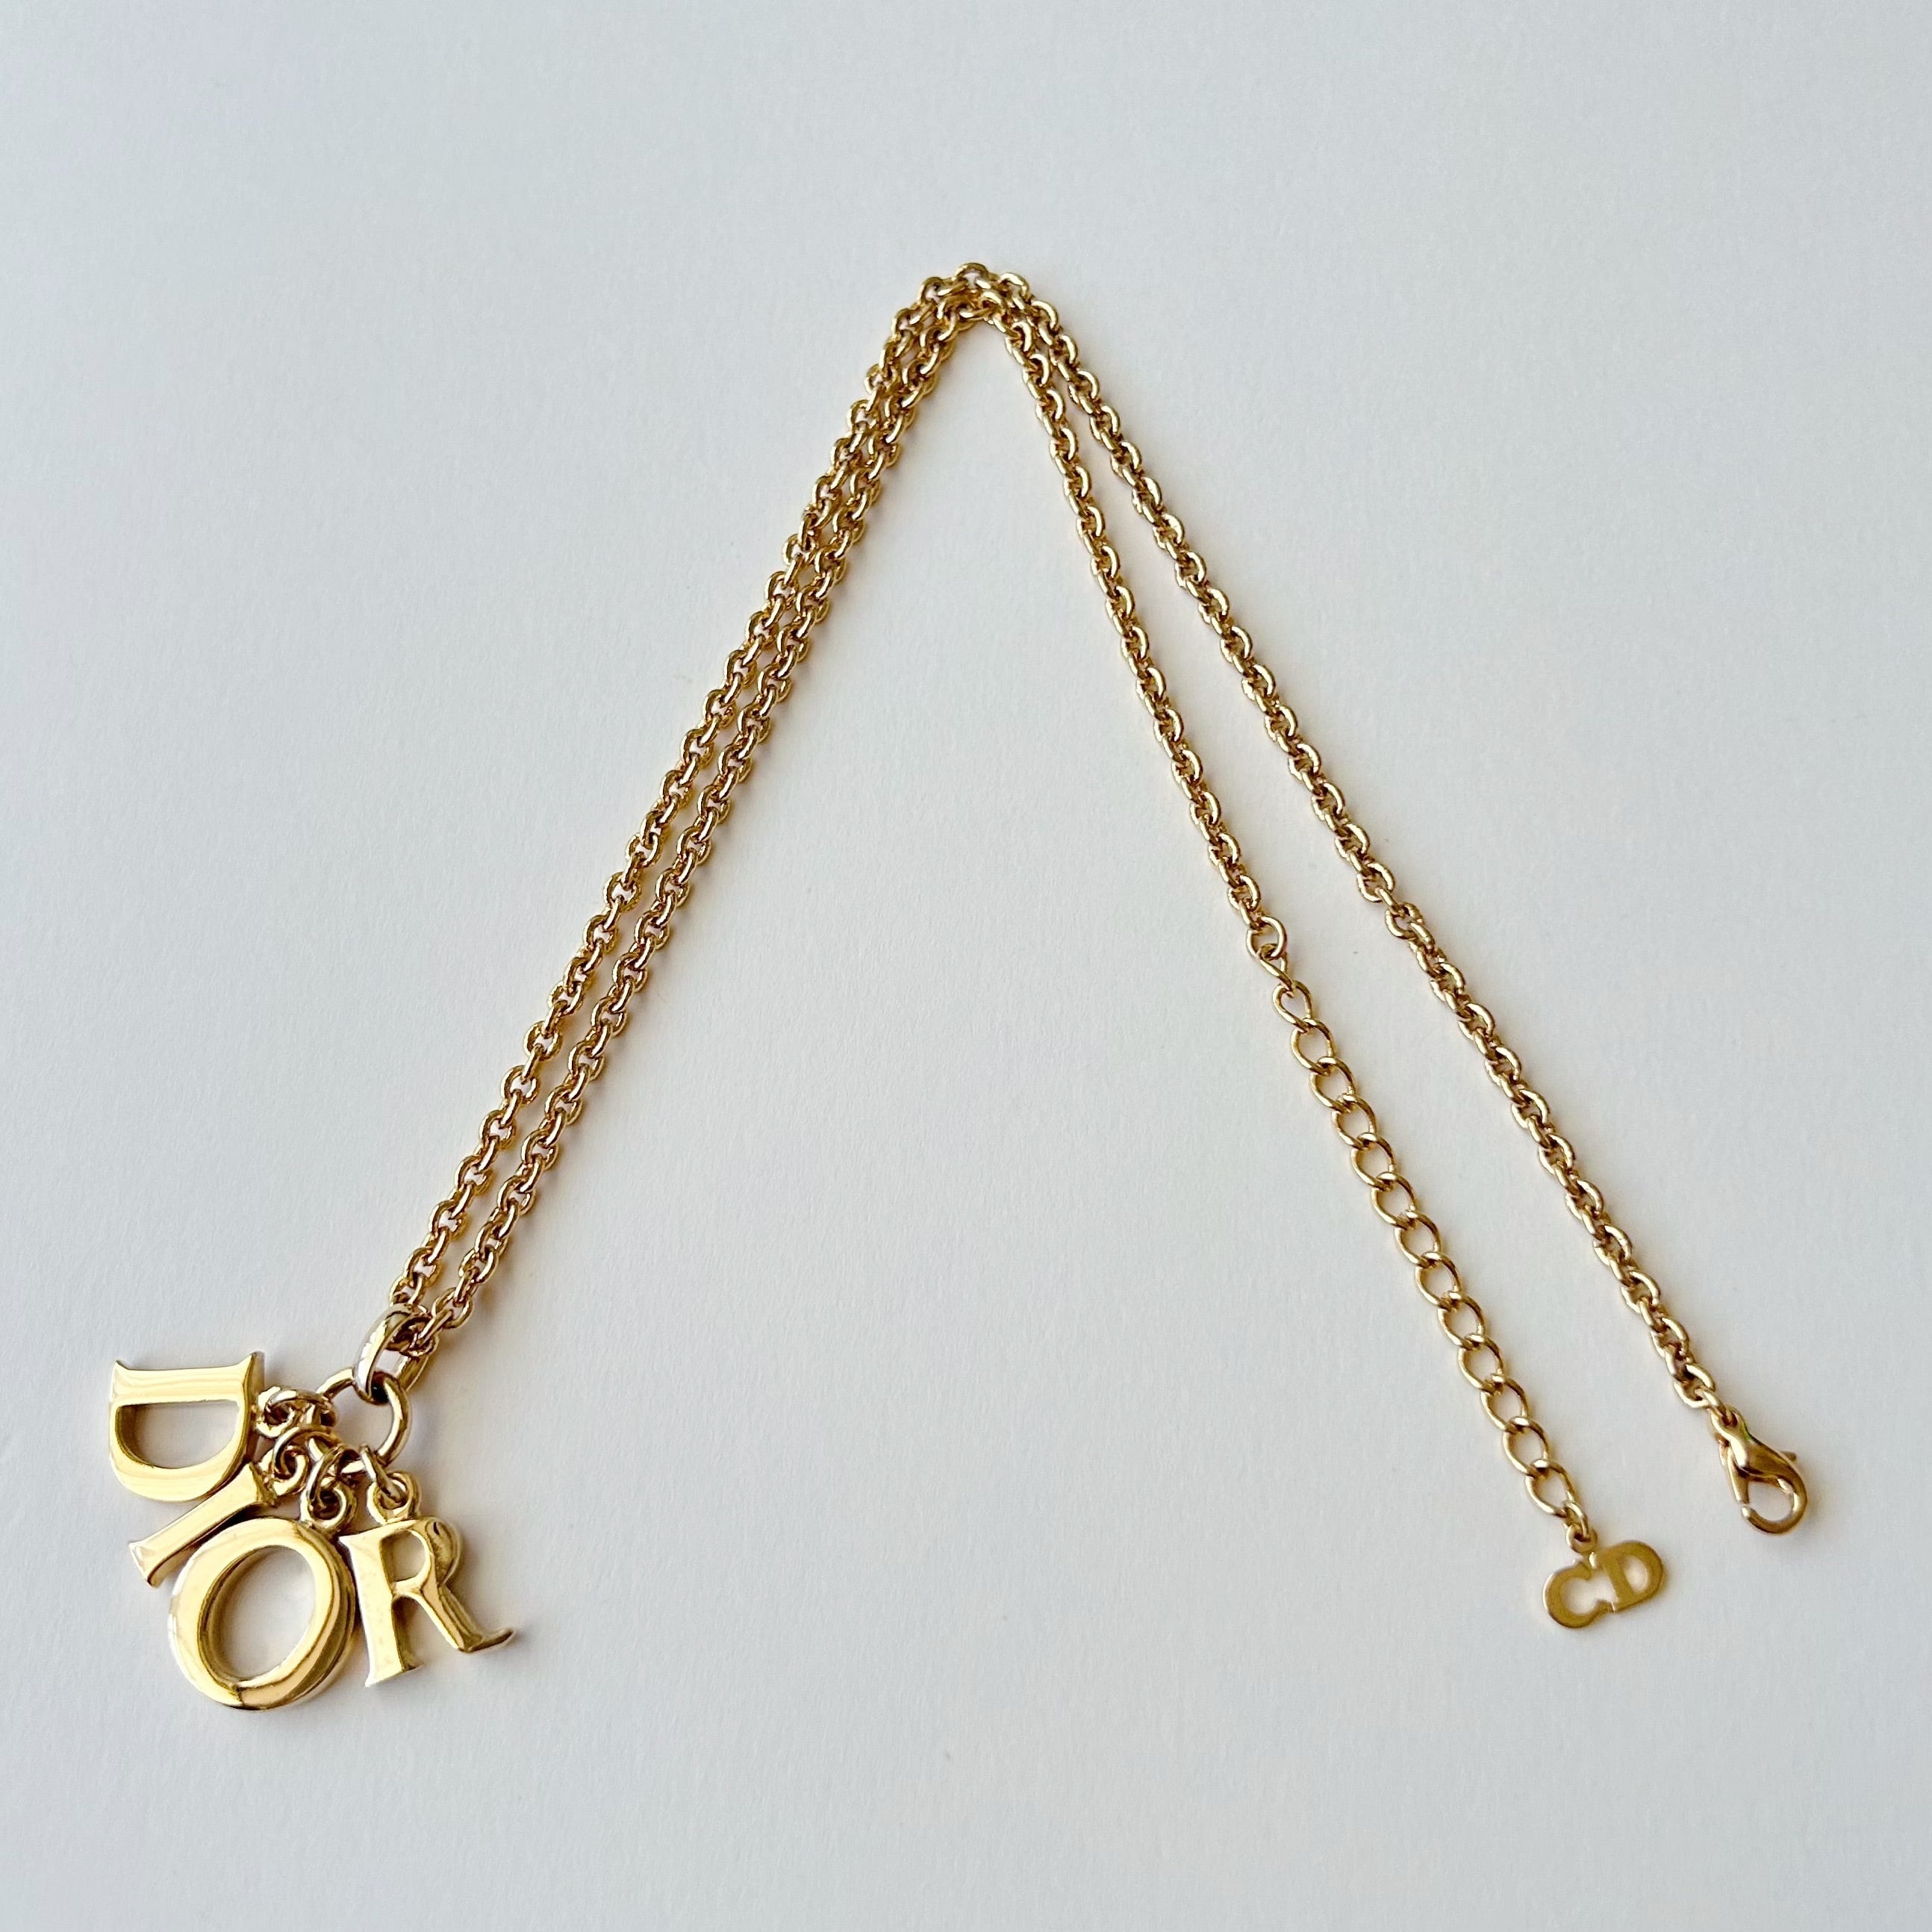 N5661】Christian Dior big logo necklace/クリスチャンディオール 